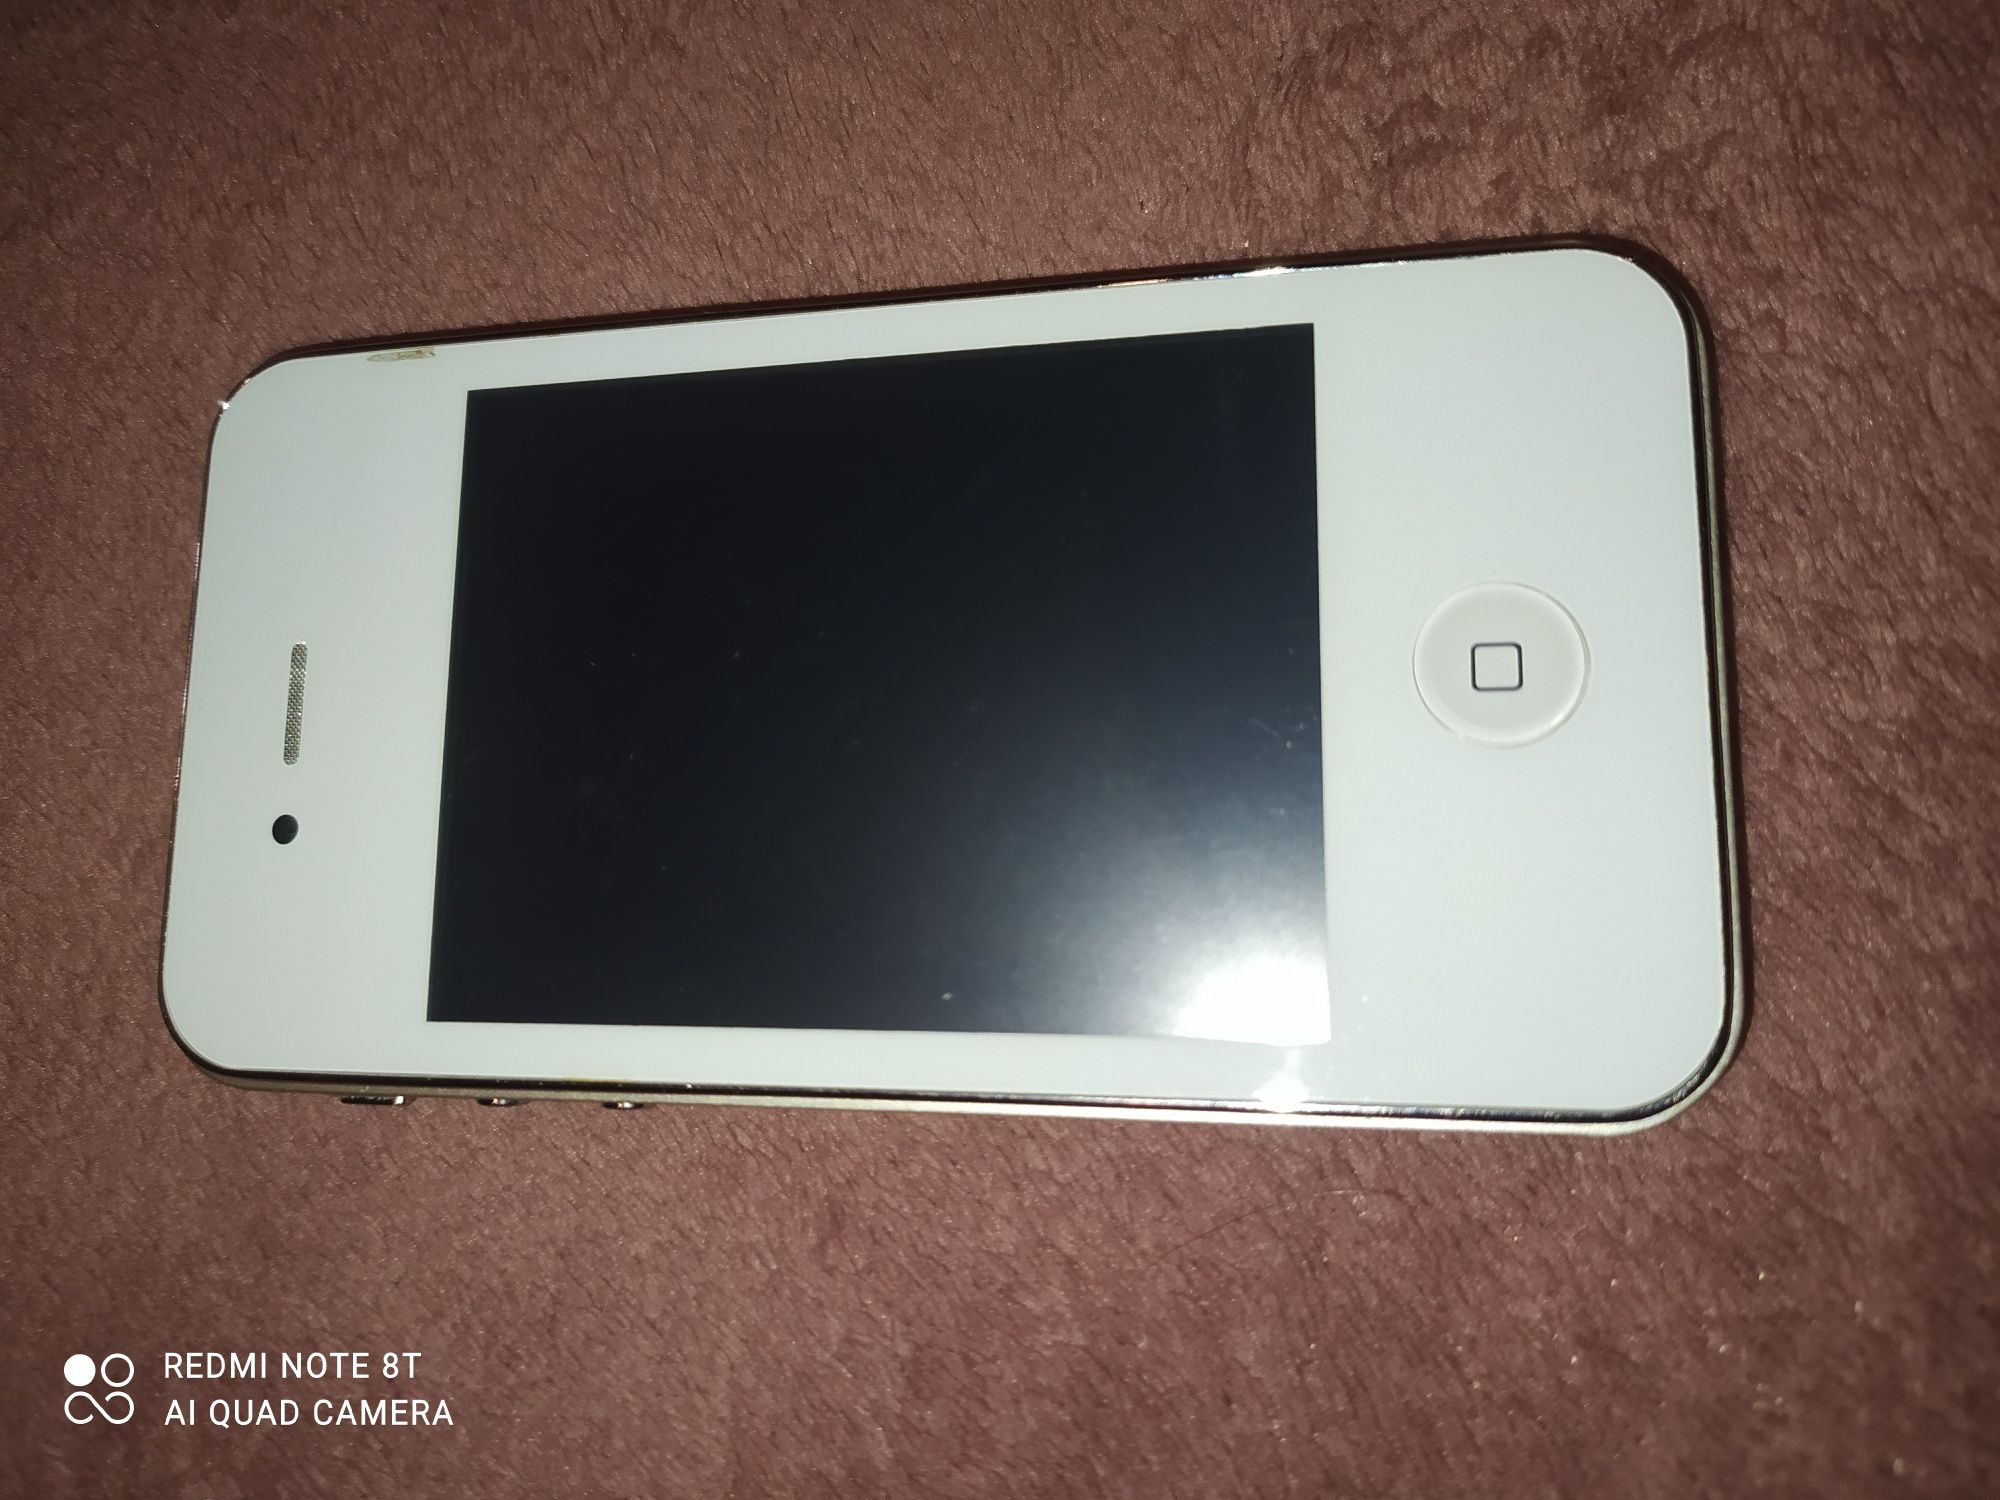 iPhone 32gb made in U.S.A подделка